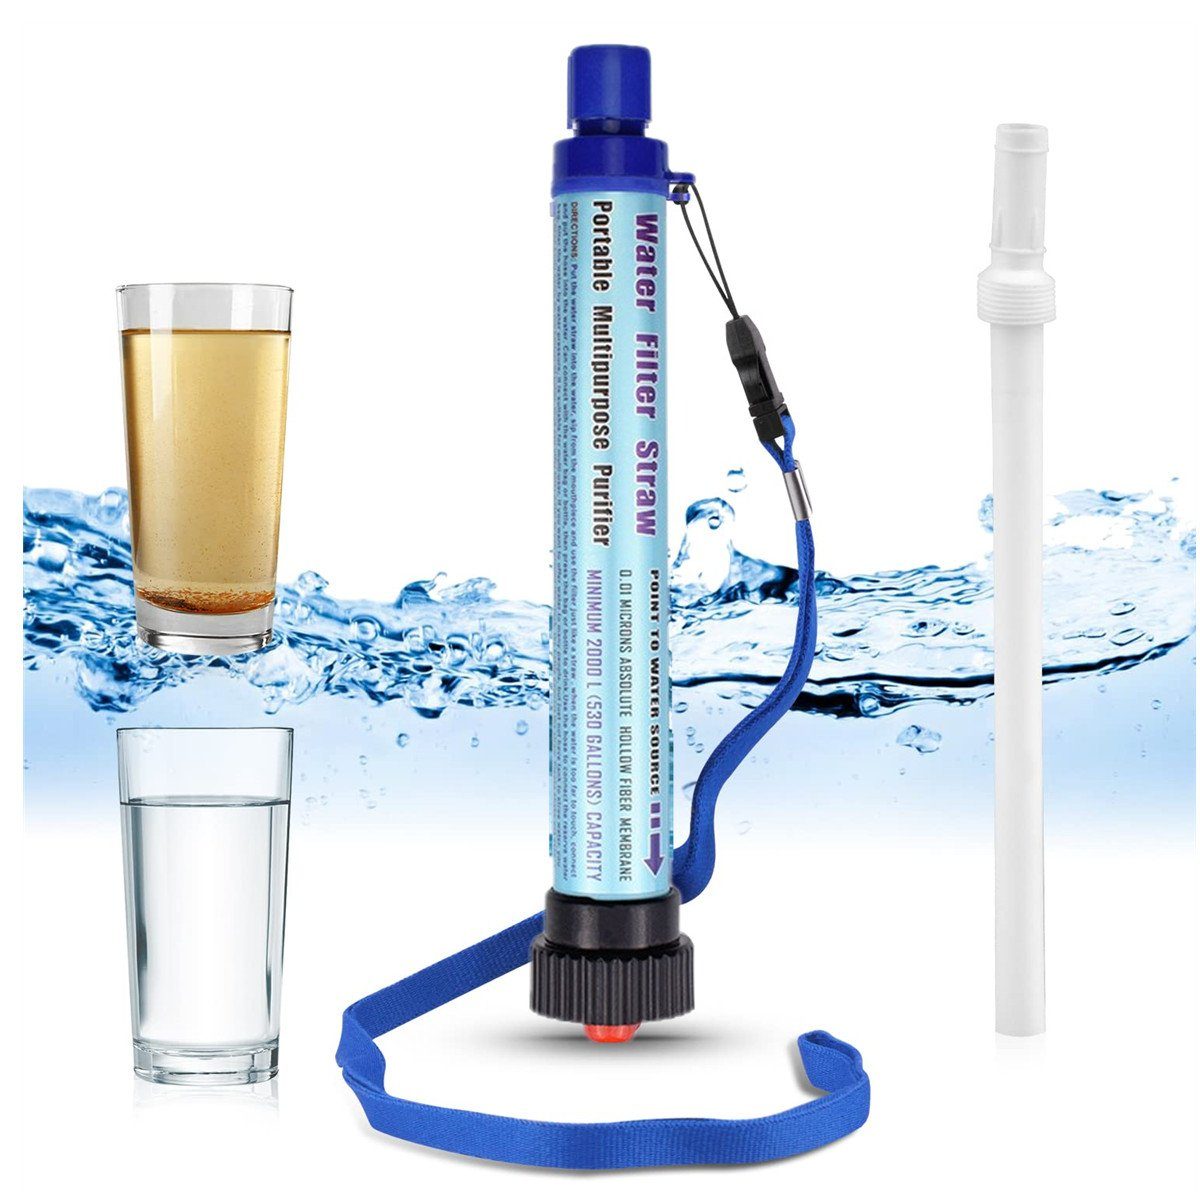 XDeer Wasserfilter Wasserfilter Outdoor,2000L Wasseraufbereiter,Survivalausrüstung, 99,99% aller Keime und Bakterien abtötet,geeignet für Camping Wandern hellblau